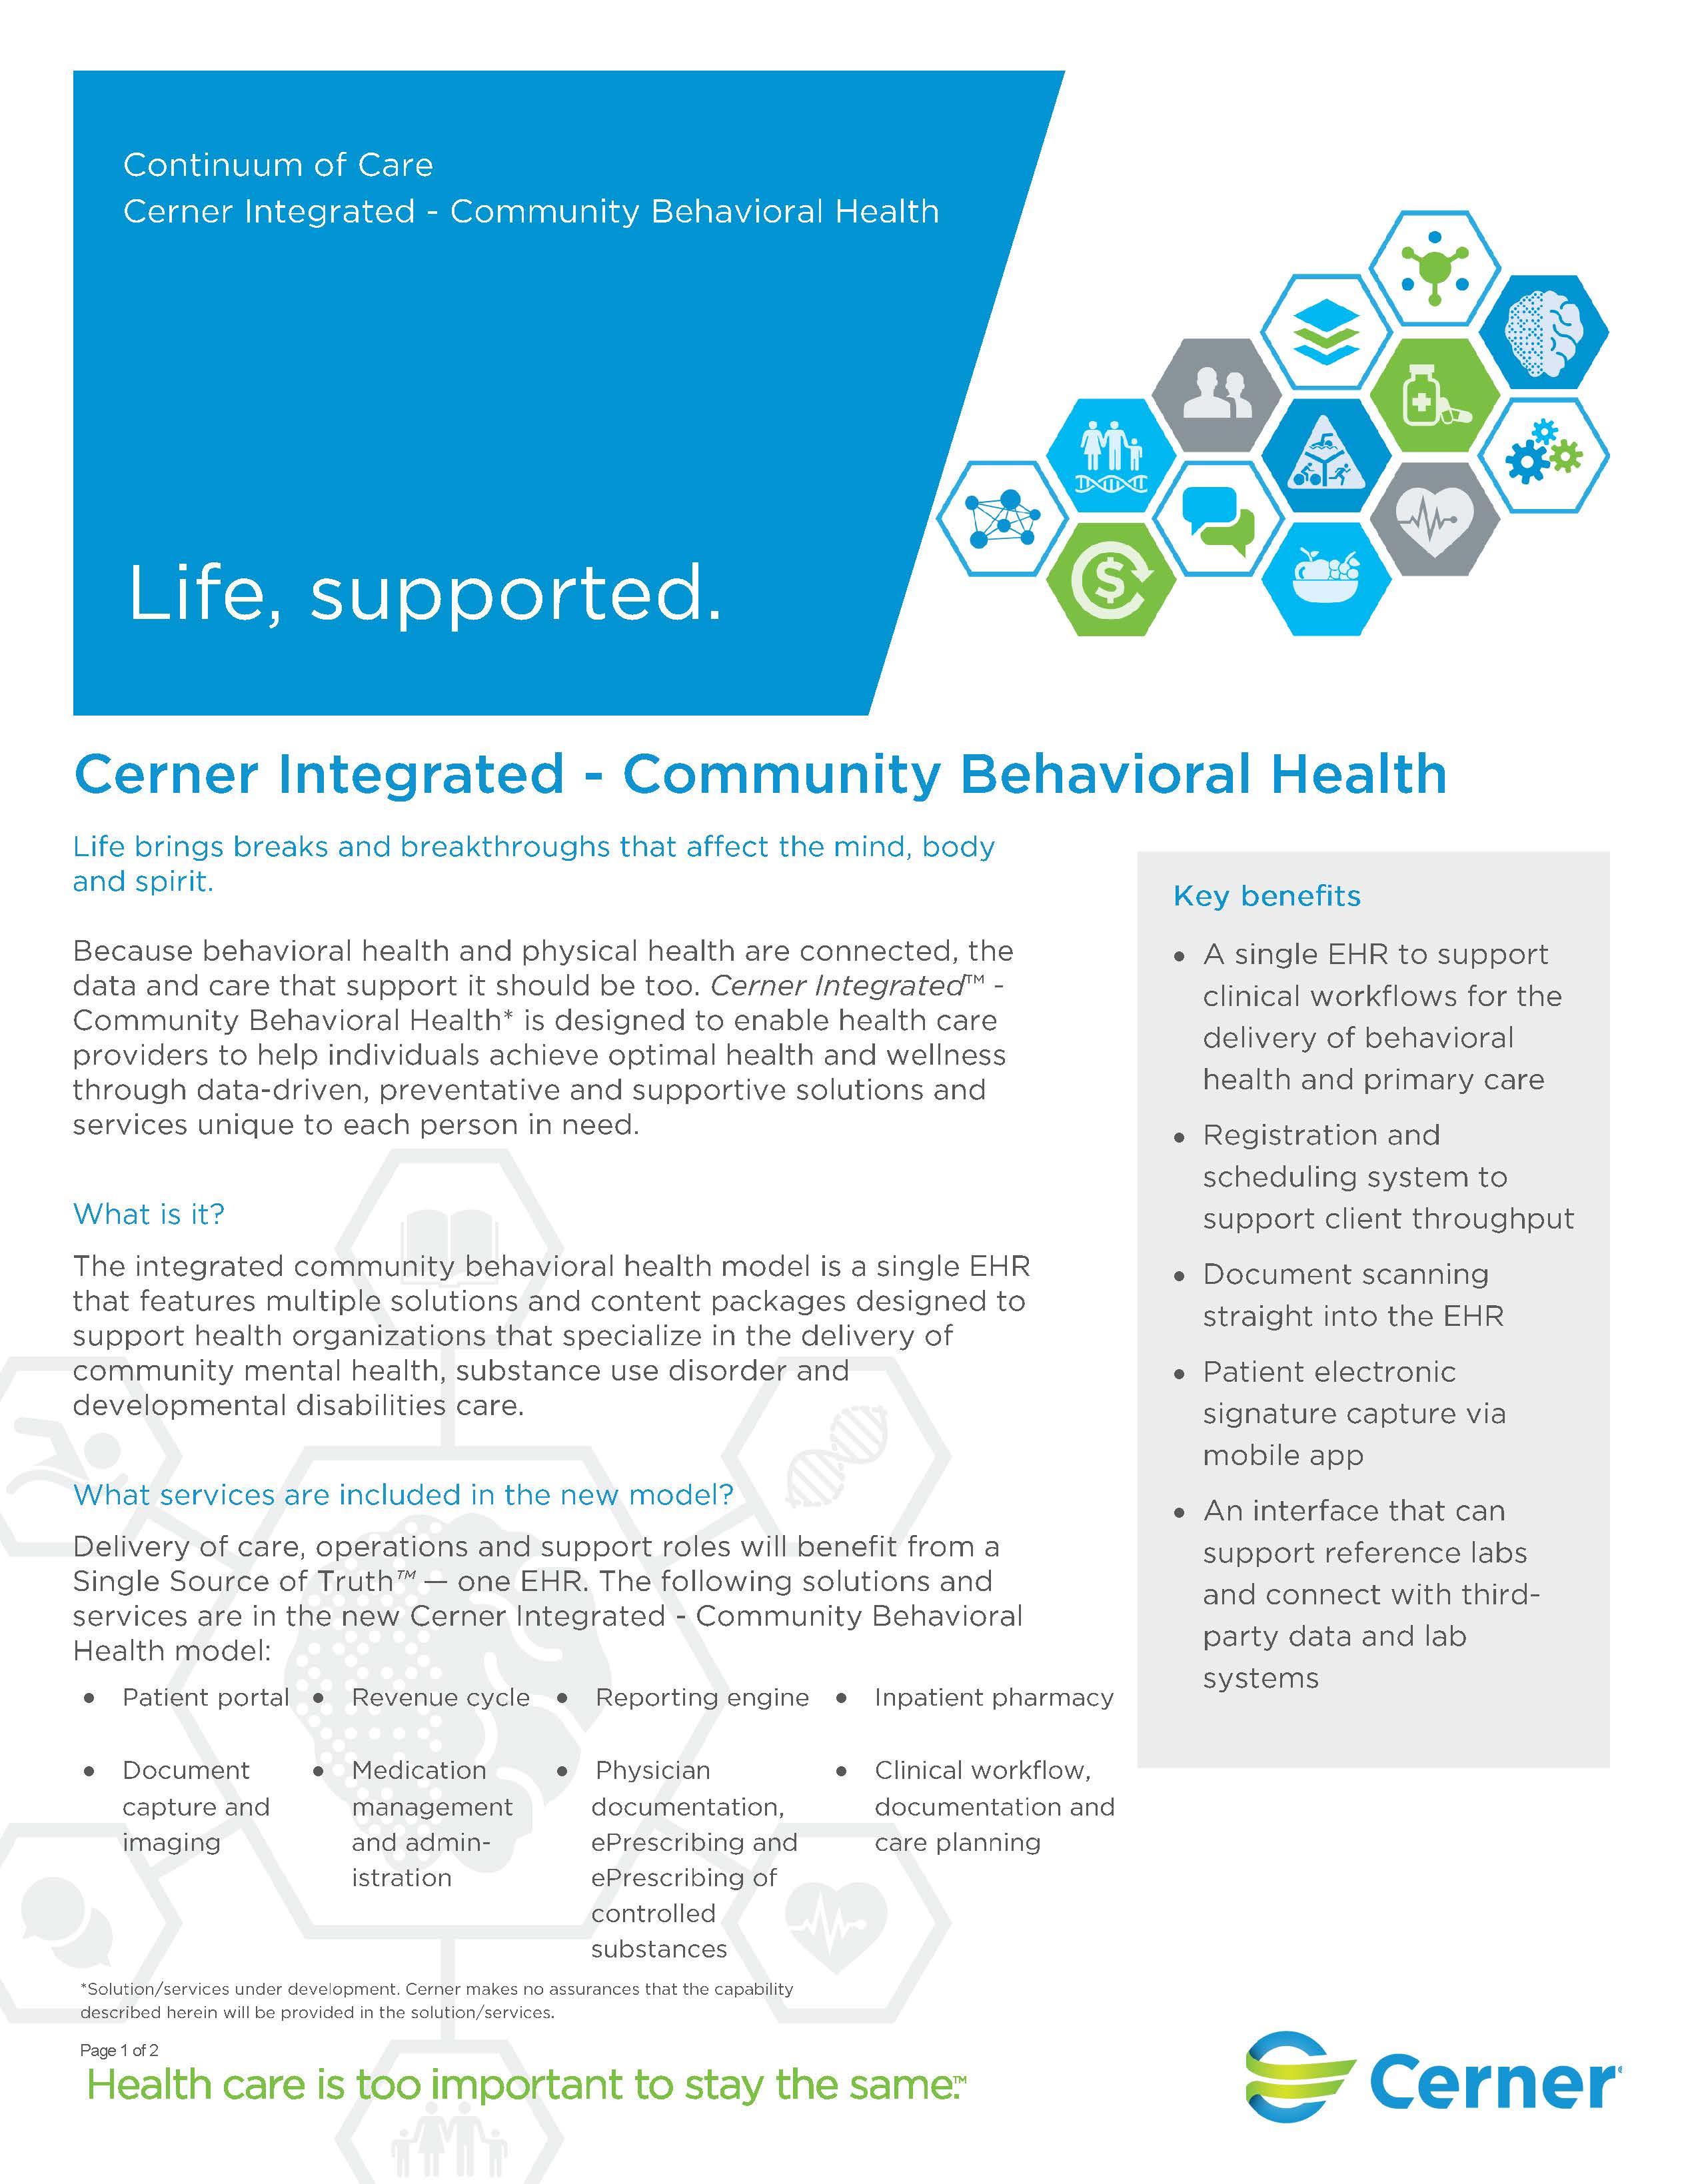 Cerner Corporation Logo - Behavioral Health | Cerner